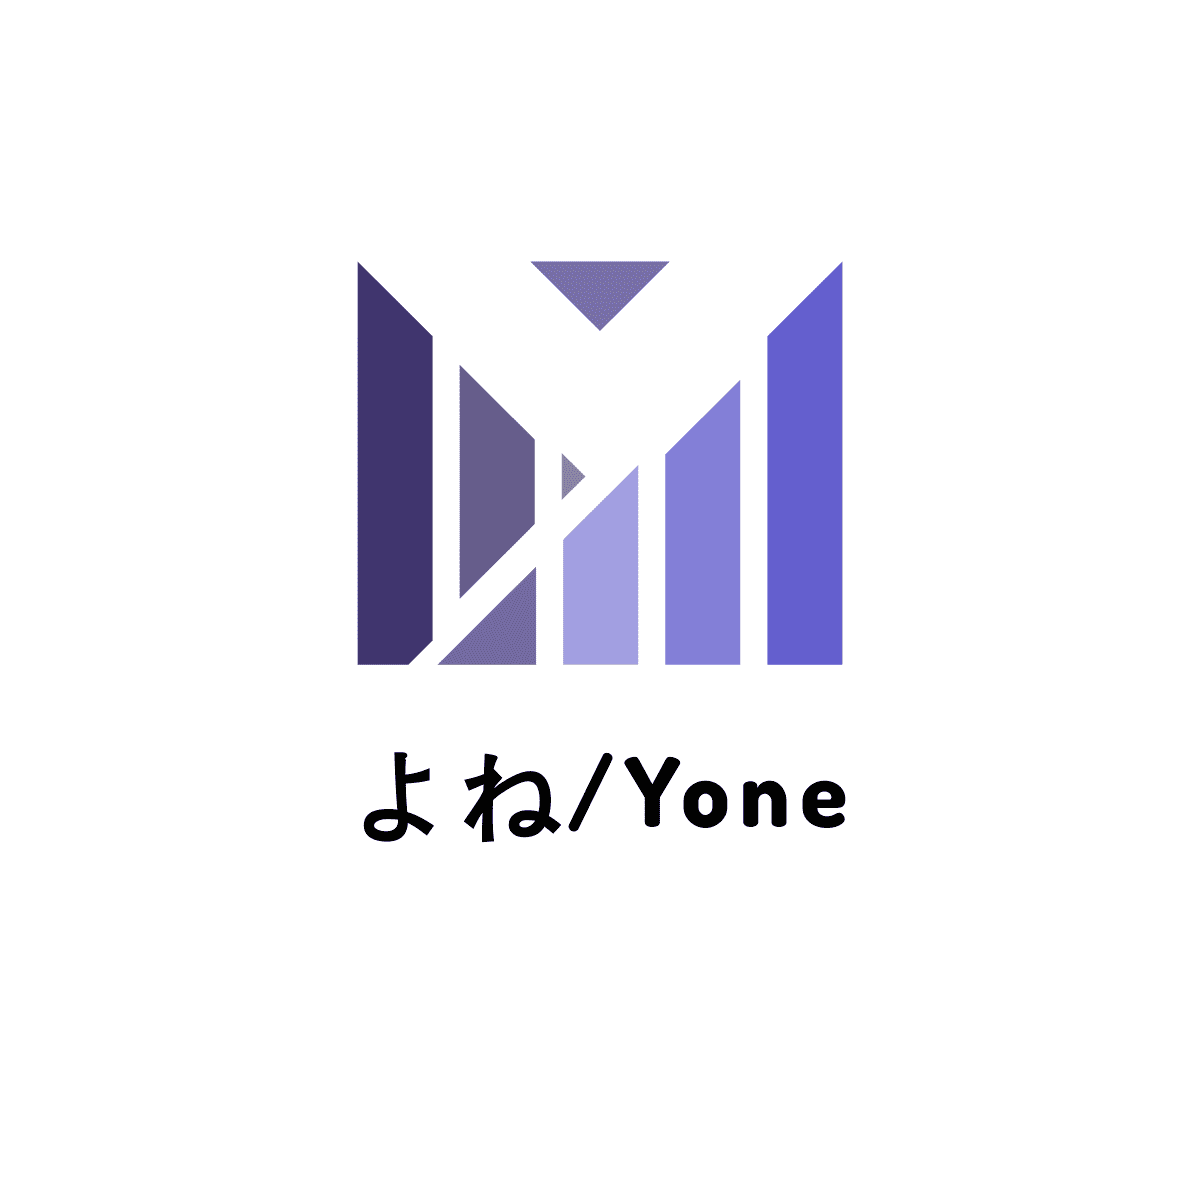 Yone's icon